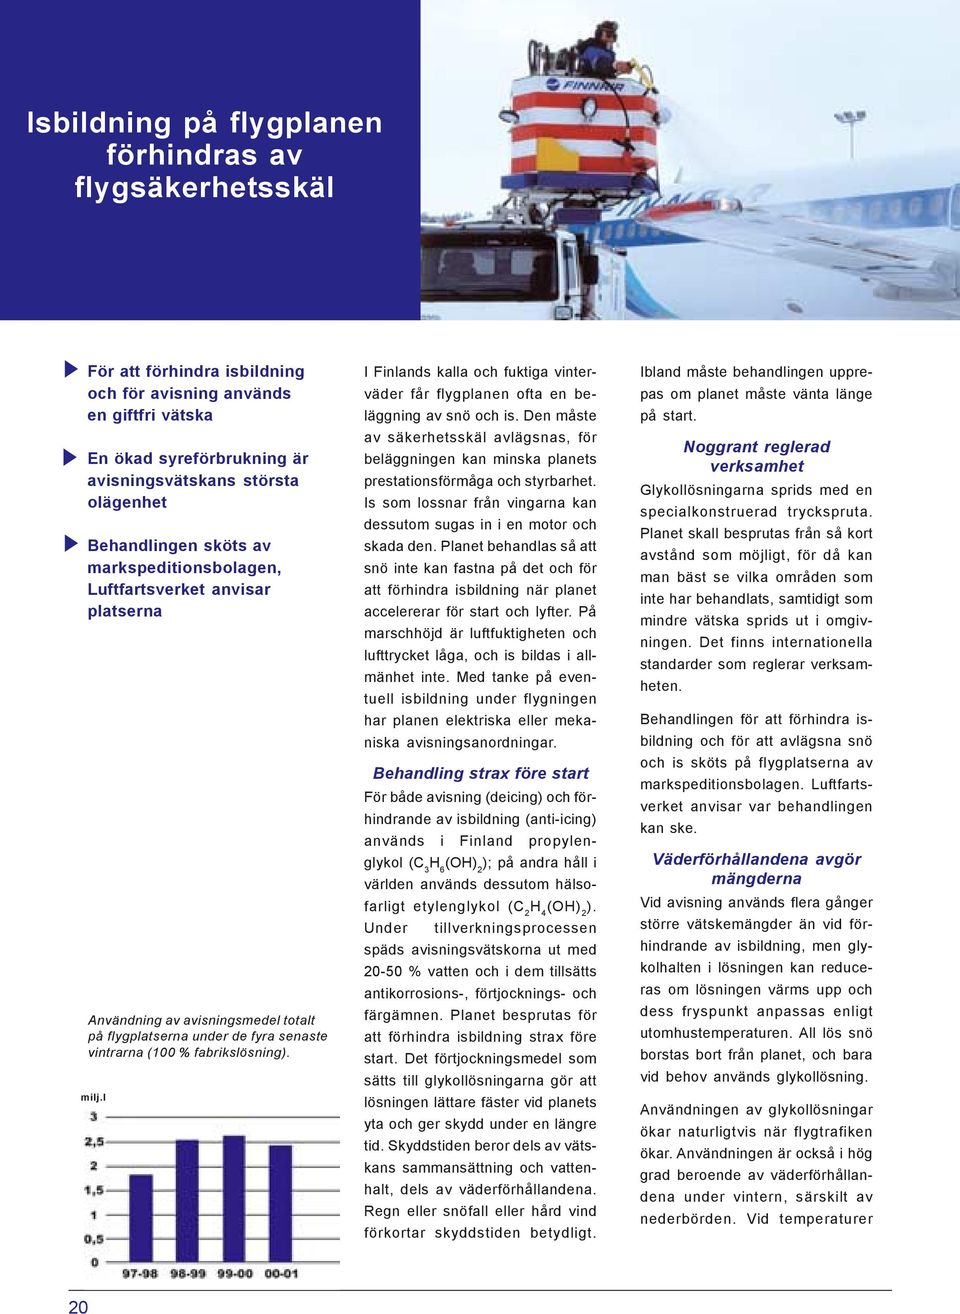 l I Finlands kalla och fuktiga vinterväder får flygplanen ofta en beläggning av snö och is. Den måste av säkerhetsskäl avlägsnas, för beläggningen kan minska planets prestationsförmåga och styrbarhet.